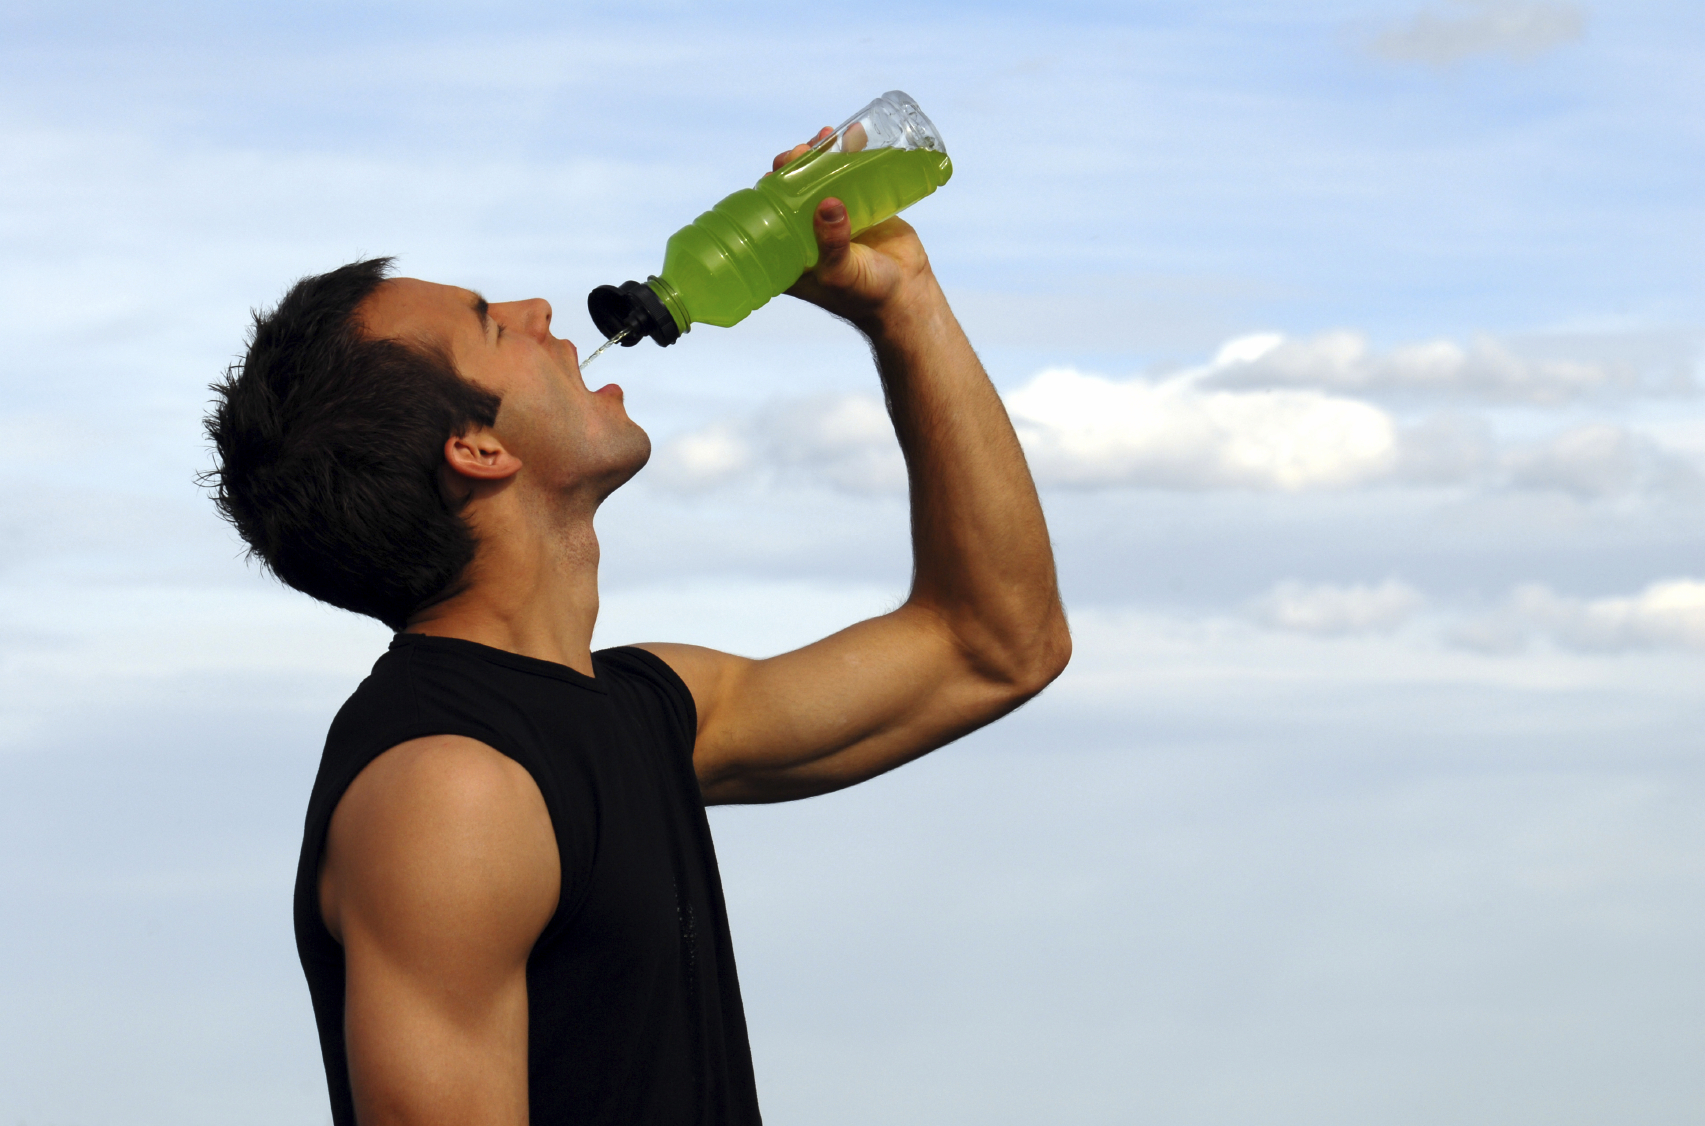 كيف تؤثر مشروبات الطاقة على الرياضيين ؟ - بلسم - آخر الأخبار - البيان